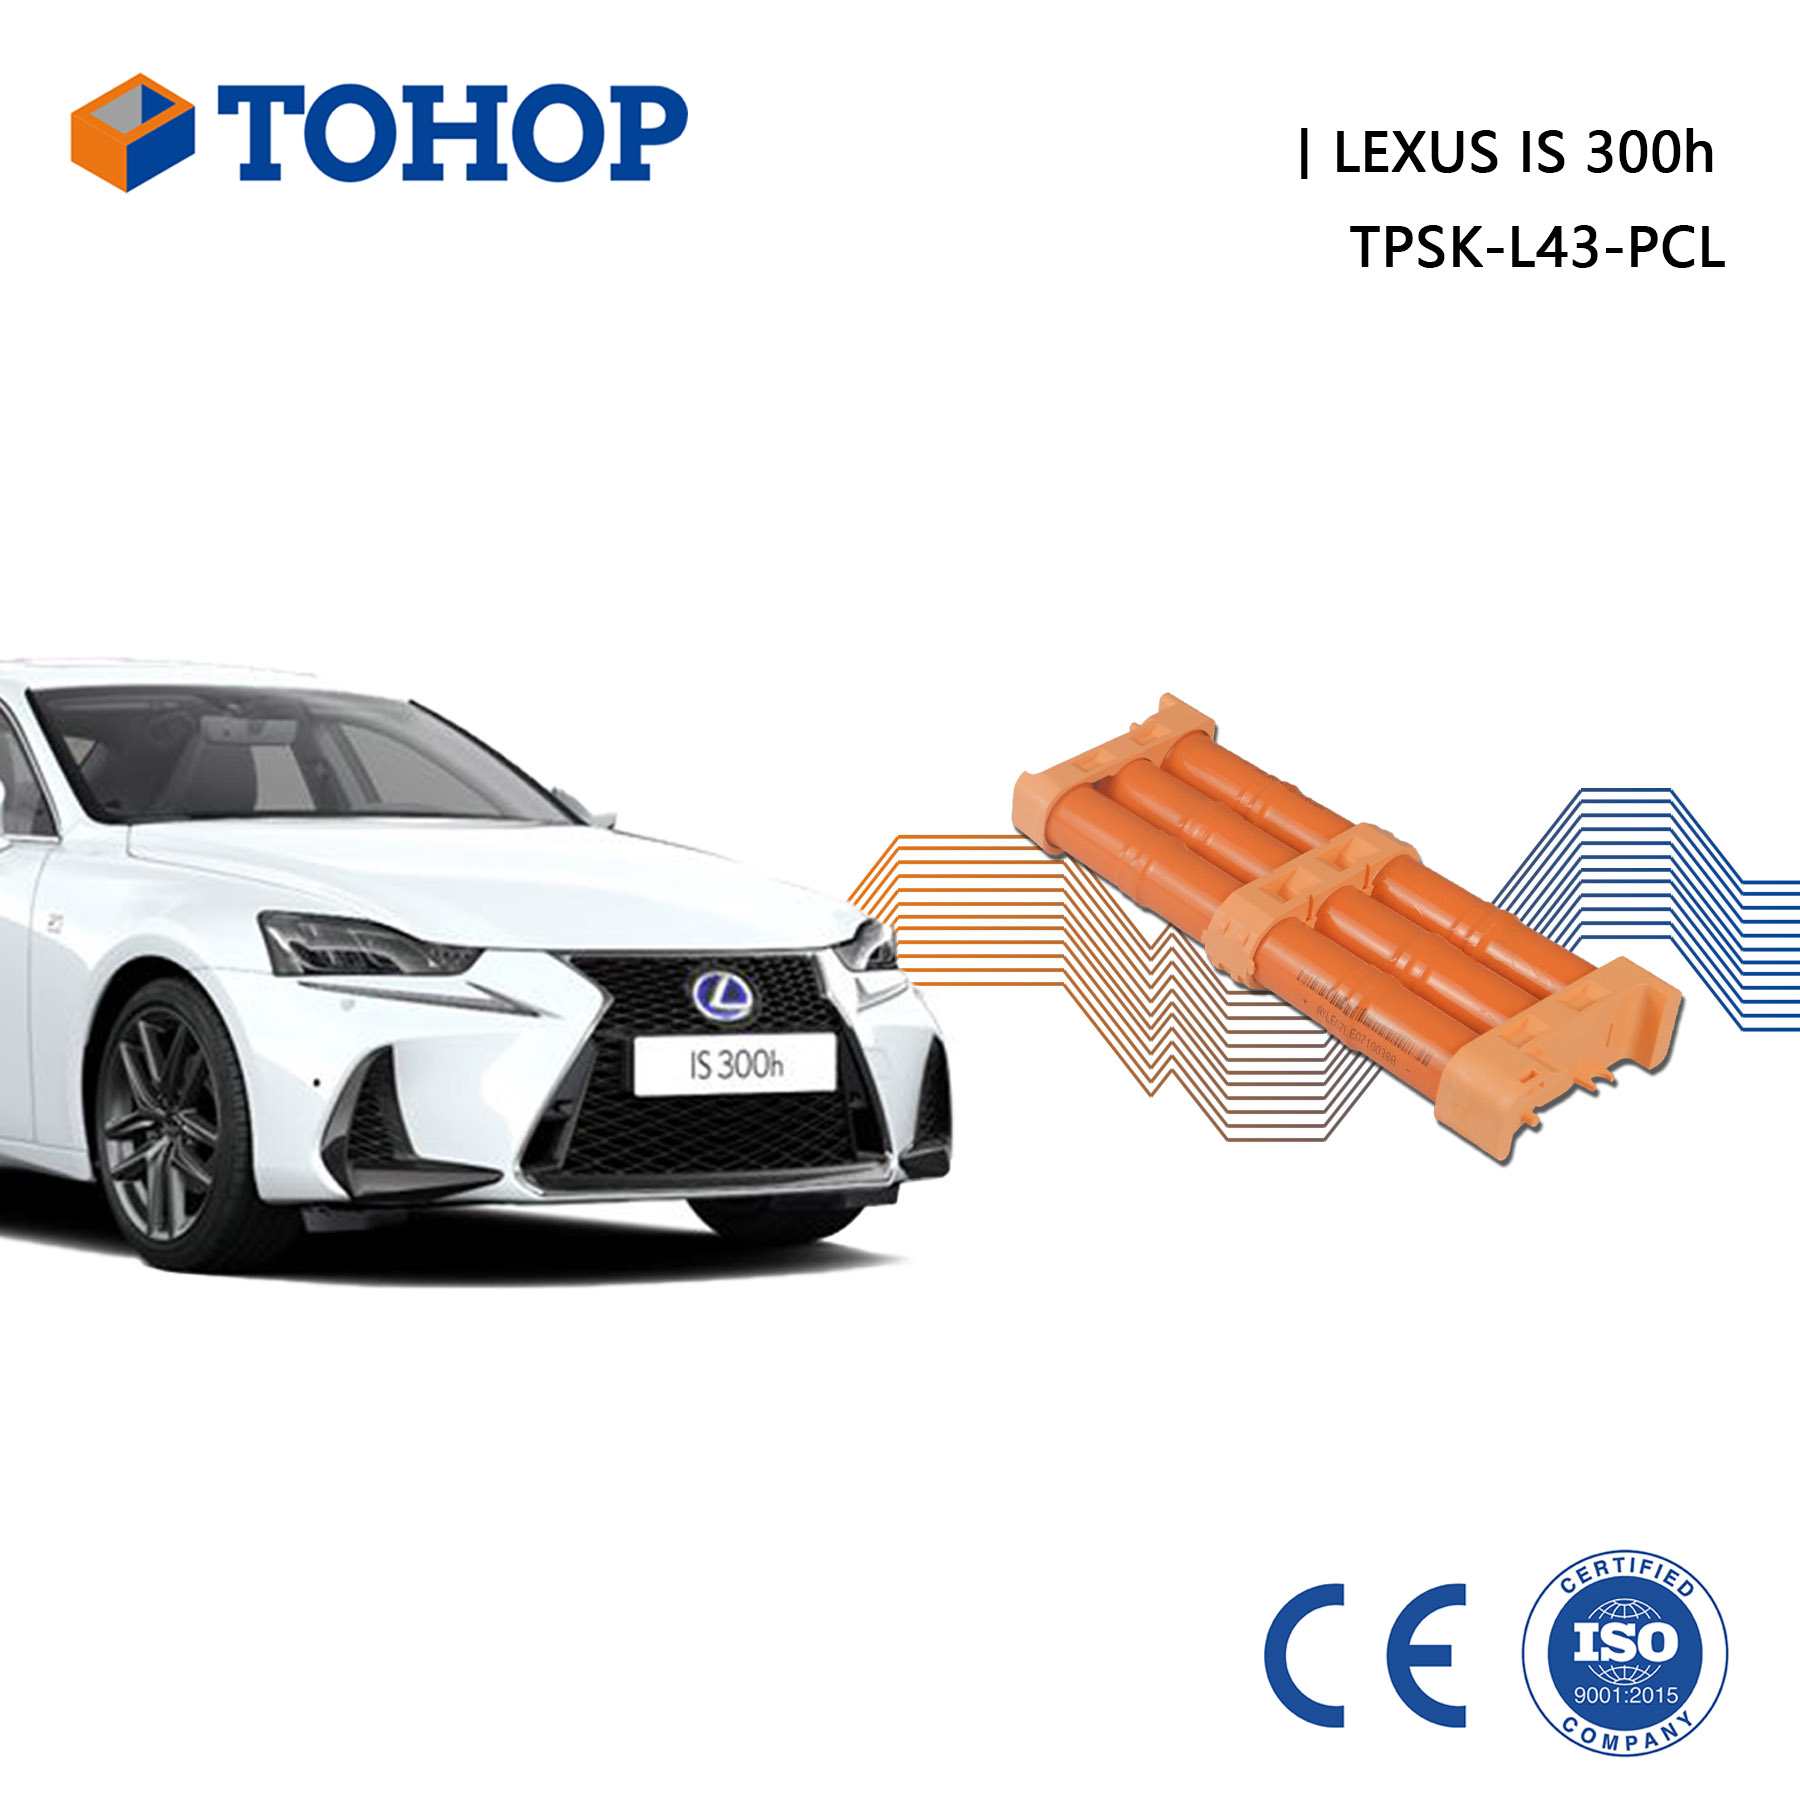 IS300h Nuevo paquete de batería híbrida de repuesto de 6.5 Ah para Lexus